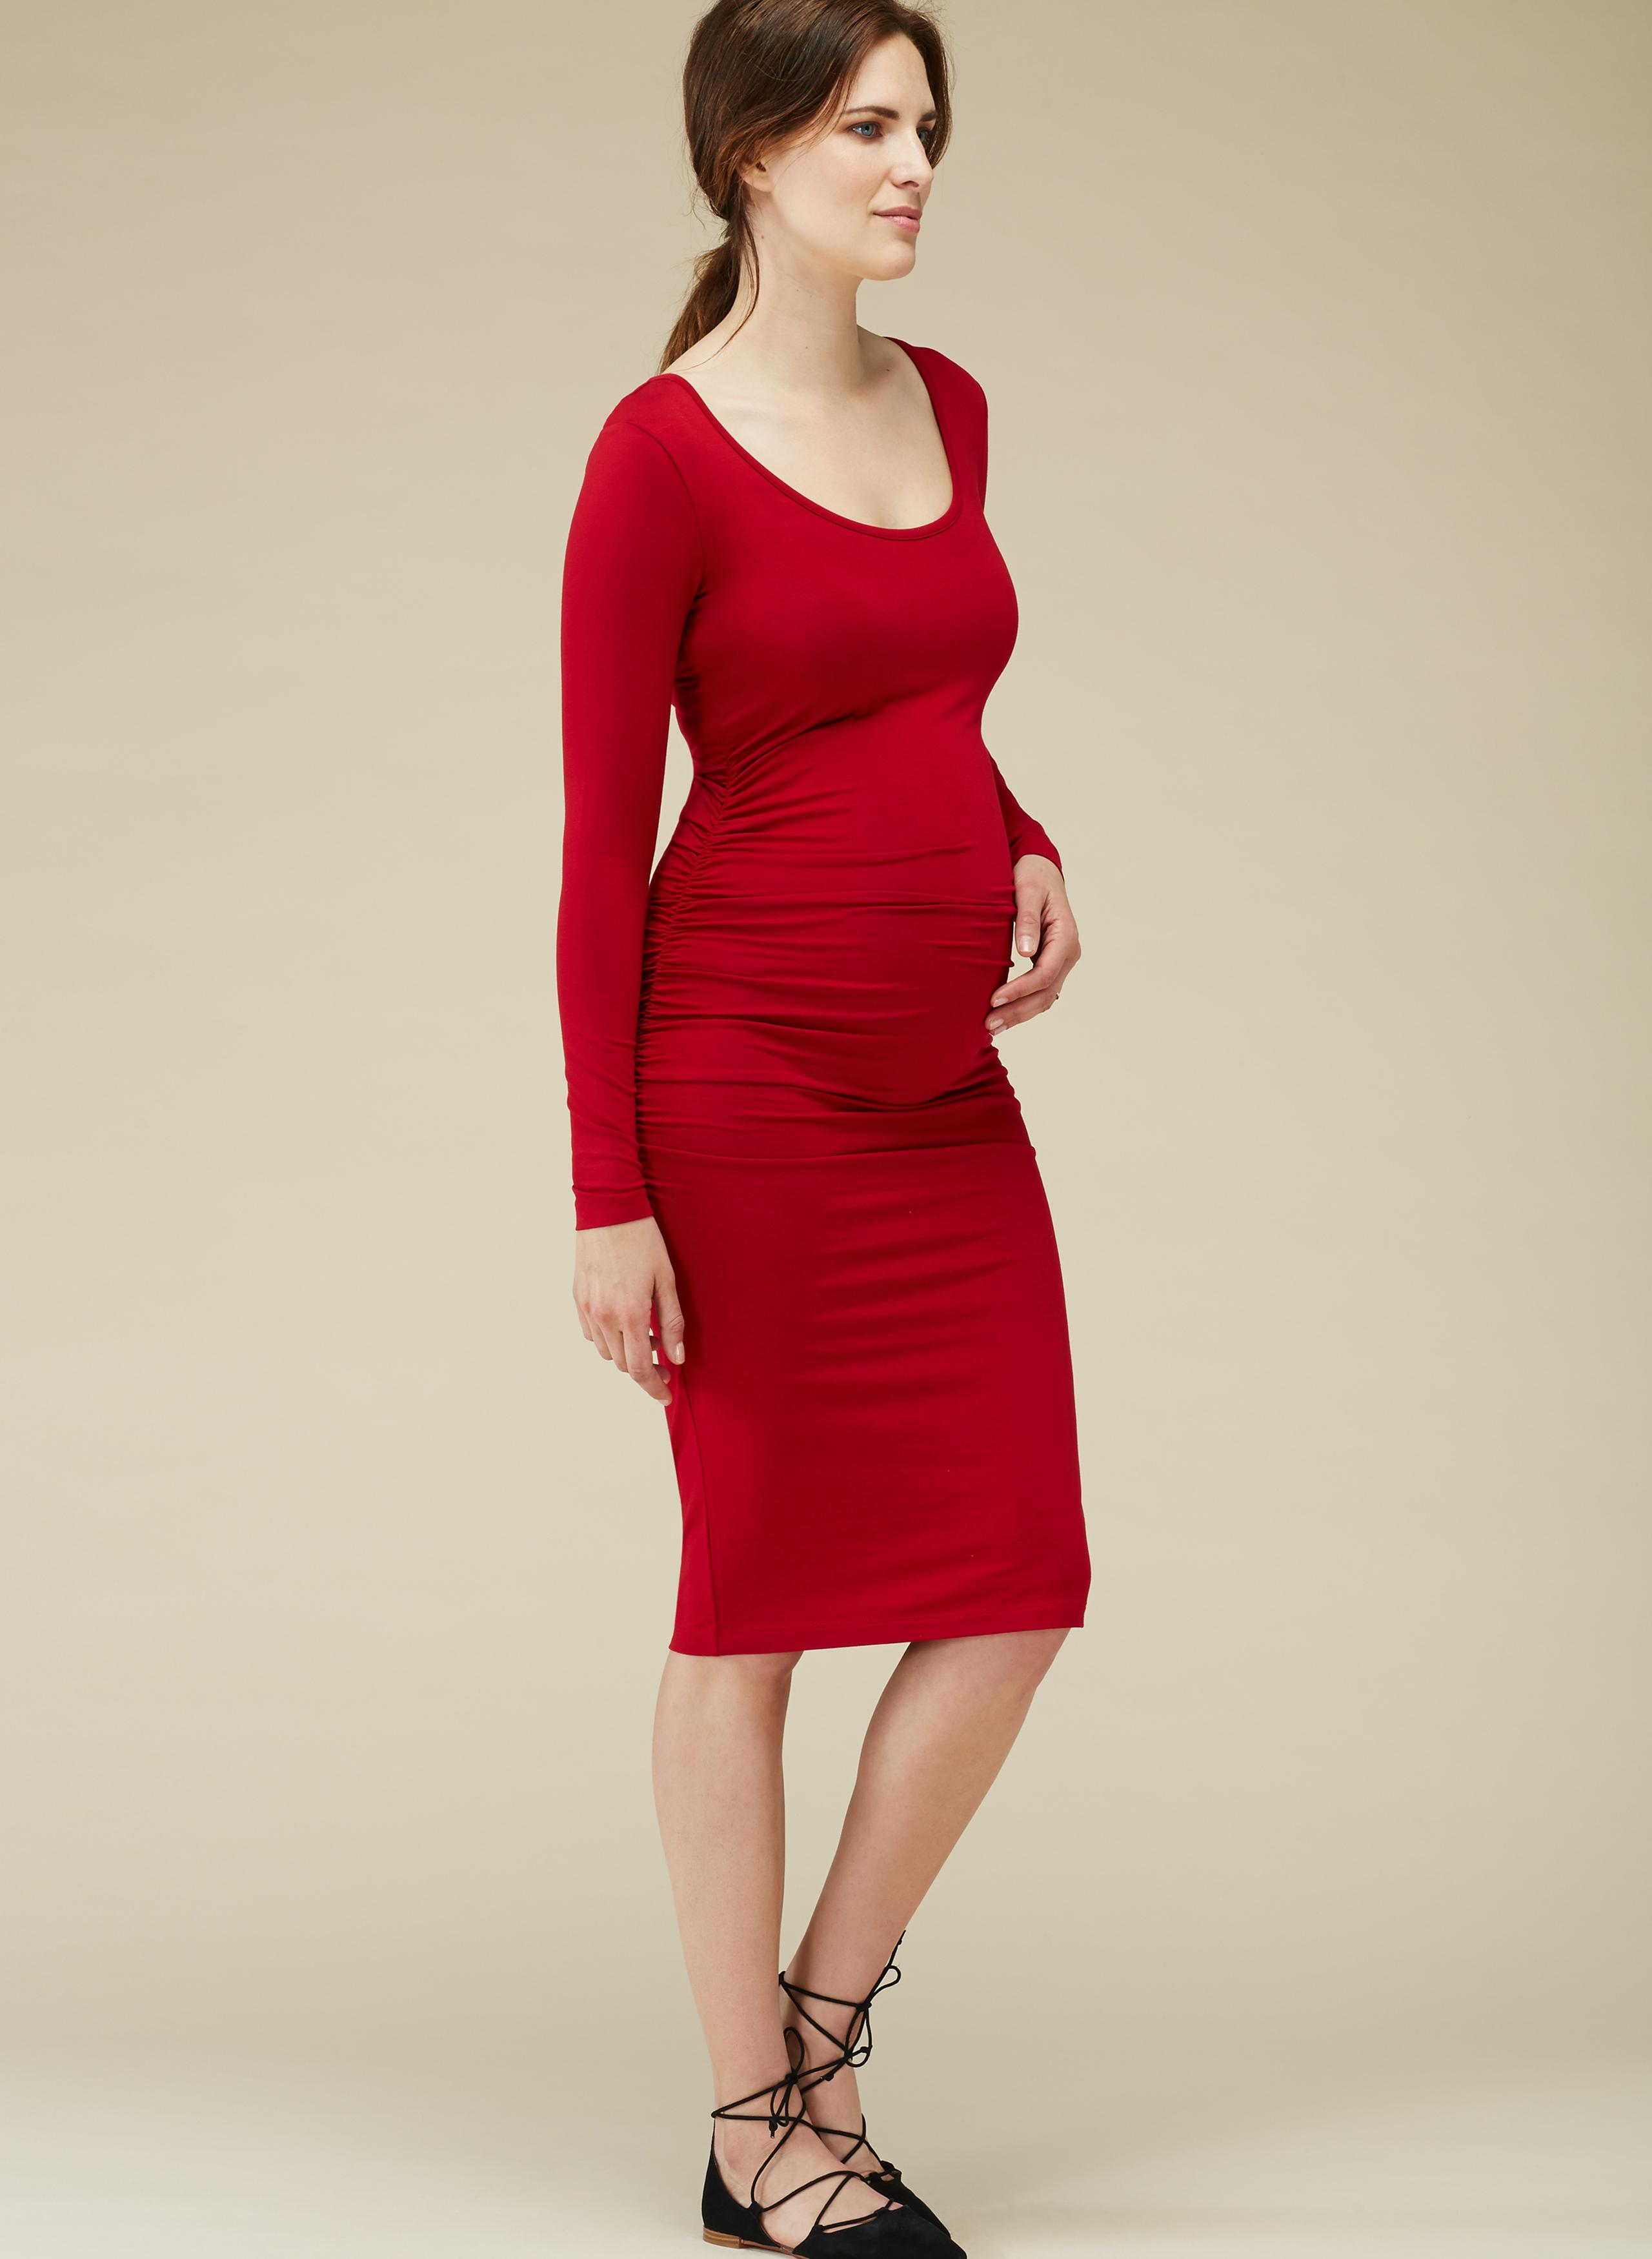 Eldon Maternity Midi Dress in Red Berry - hautemama